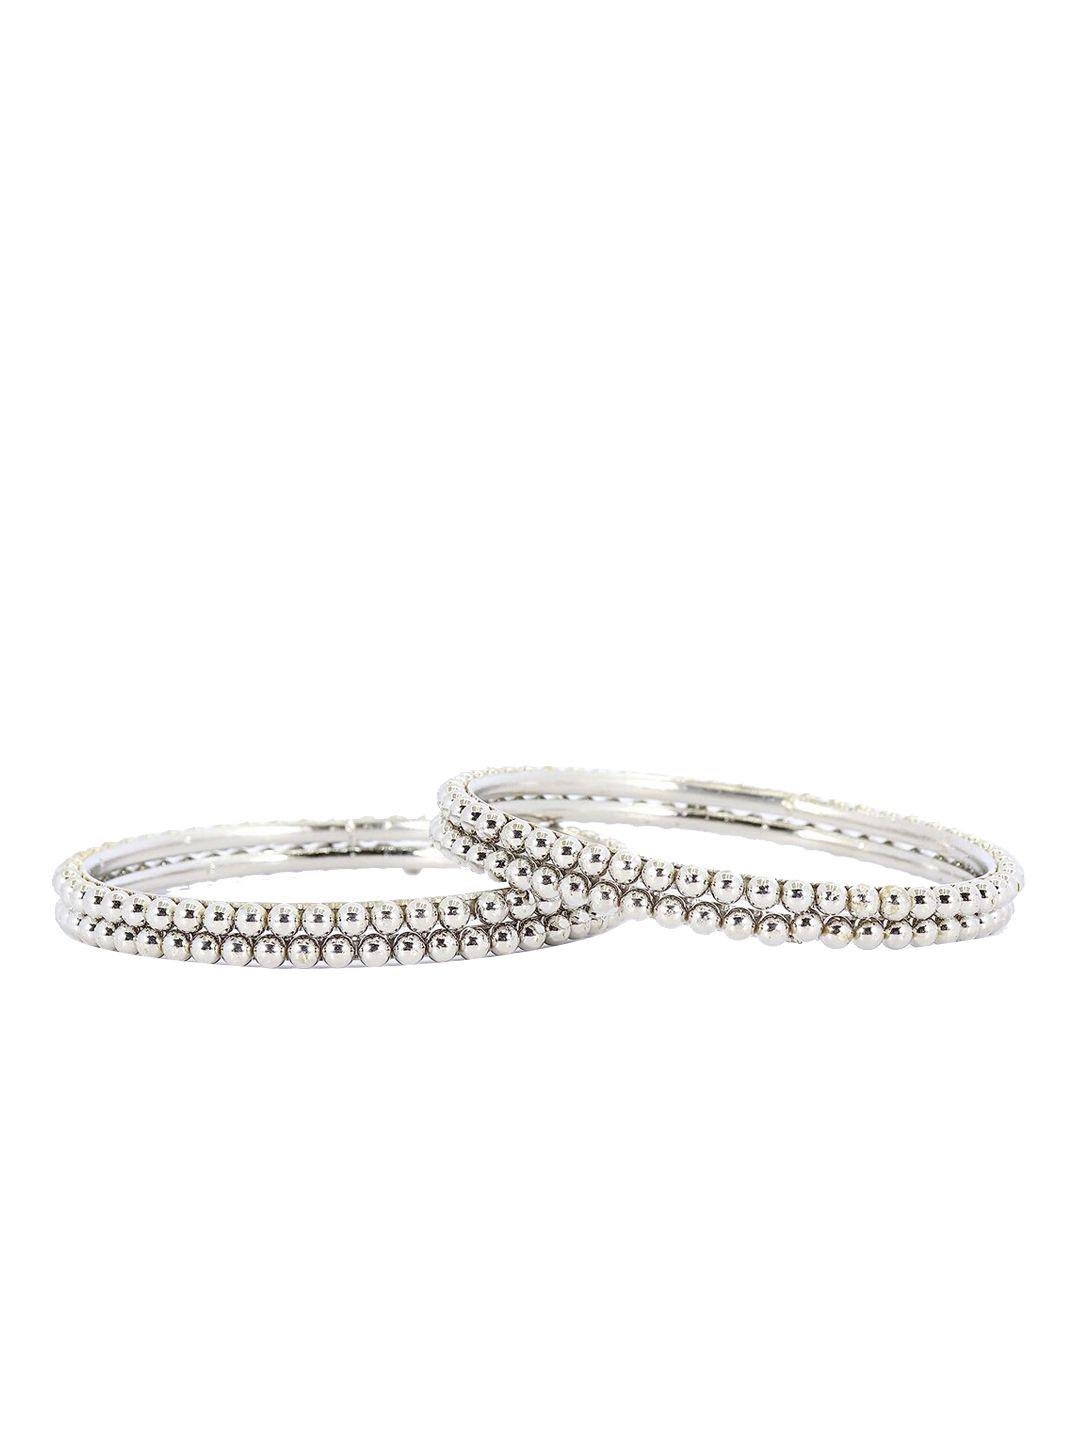 nmii set of 4 crystal ball chain studded bangles